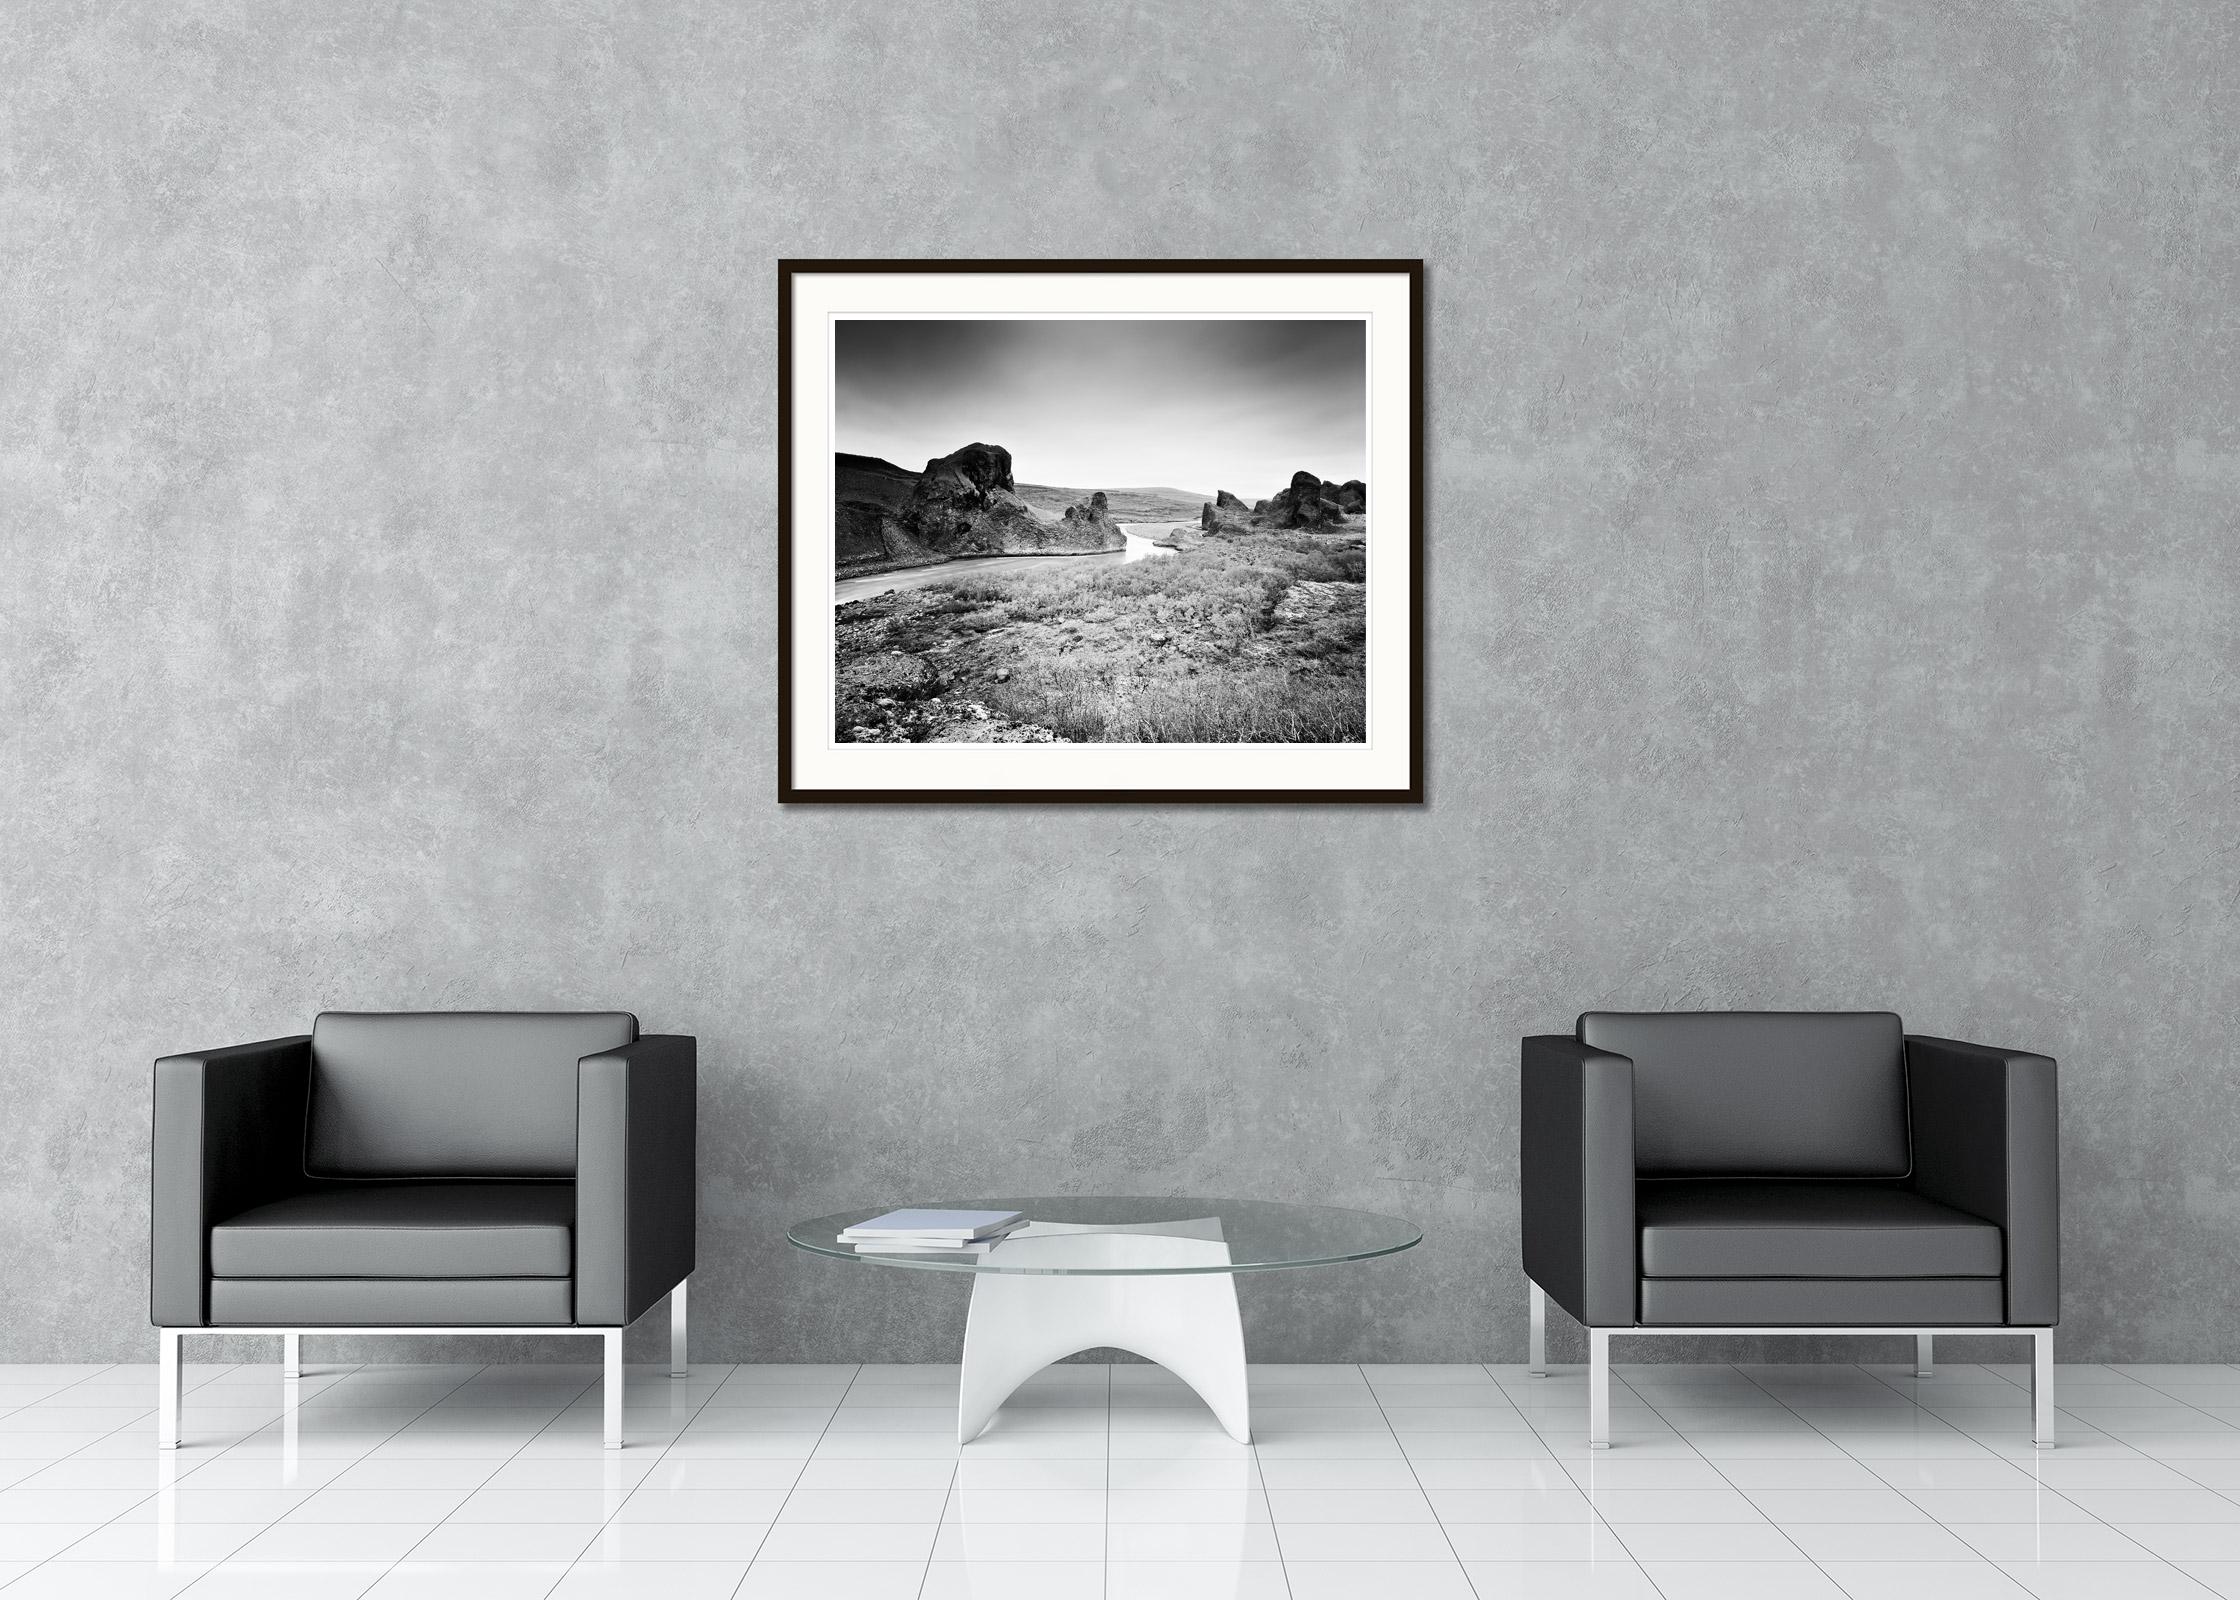 SILVERFINEART - Schwarze und weiße Landschaftsfotografie. Limitierte Auflage von 7 Exemplaren, hergestellt aus dem originalen großformatigen 4x5 Zoll Schwarzweiß-Negativfilm und gedruckt als archivtauglicher Pigmenttintendruck auf Kunstdruckpapier.